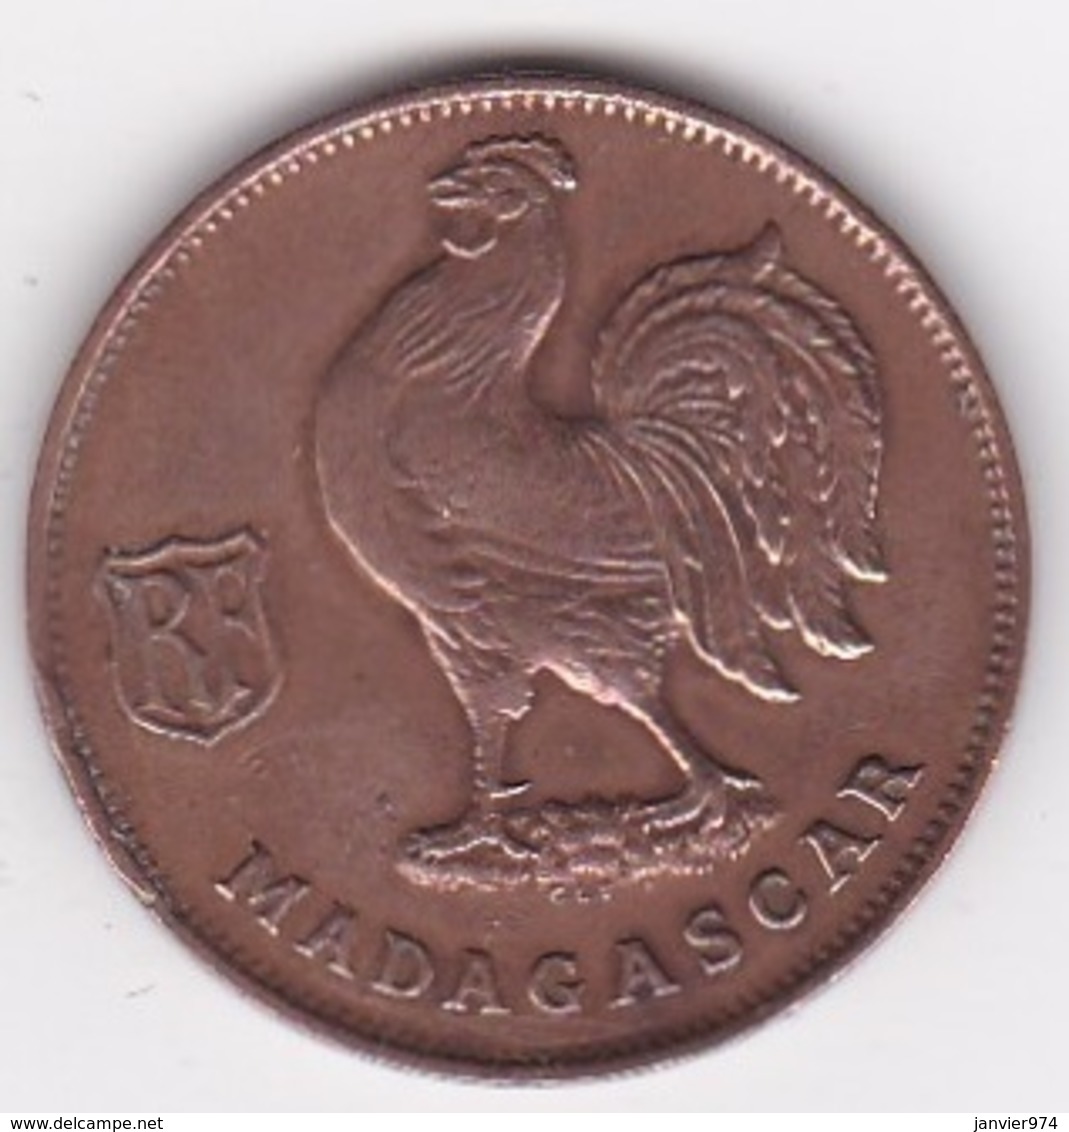 MADAGASCAR. FRANCE LIBRE. 1 Franc 1943. BRONZE - Madagaskar